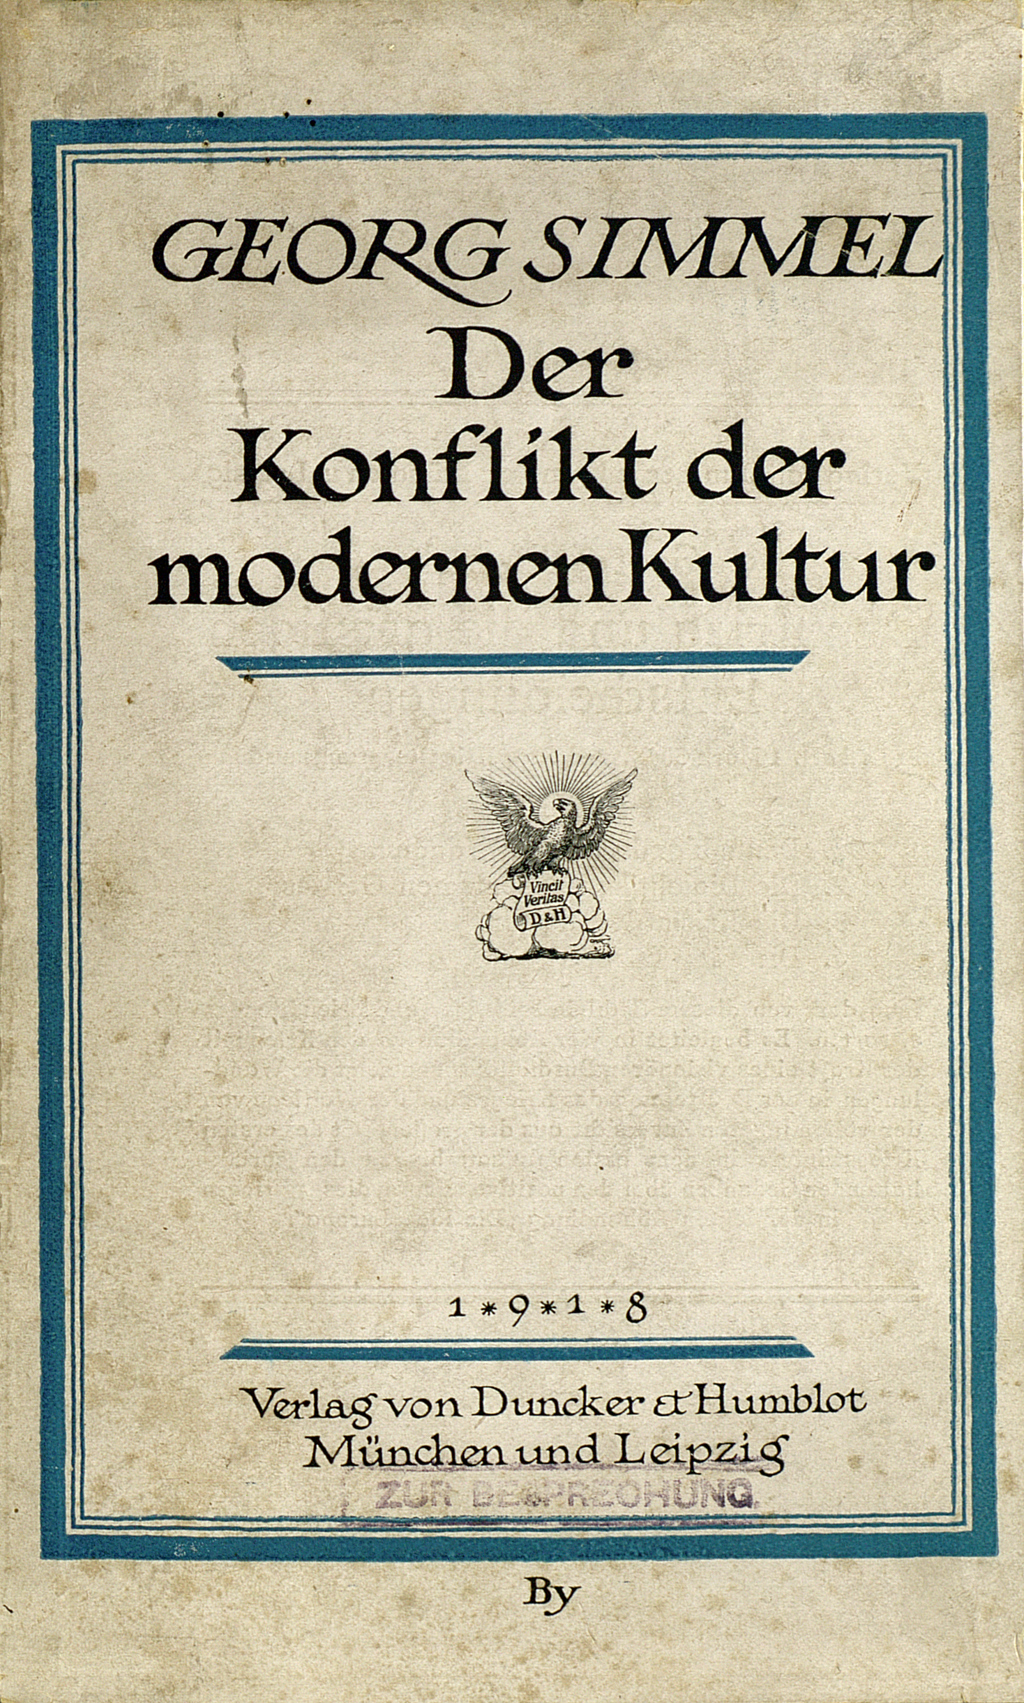 Zu sehen ist der Vorderdeckel des Buches von Georg Simmel mit dem schriftlichen Titel.